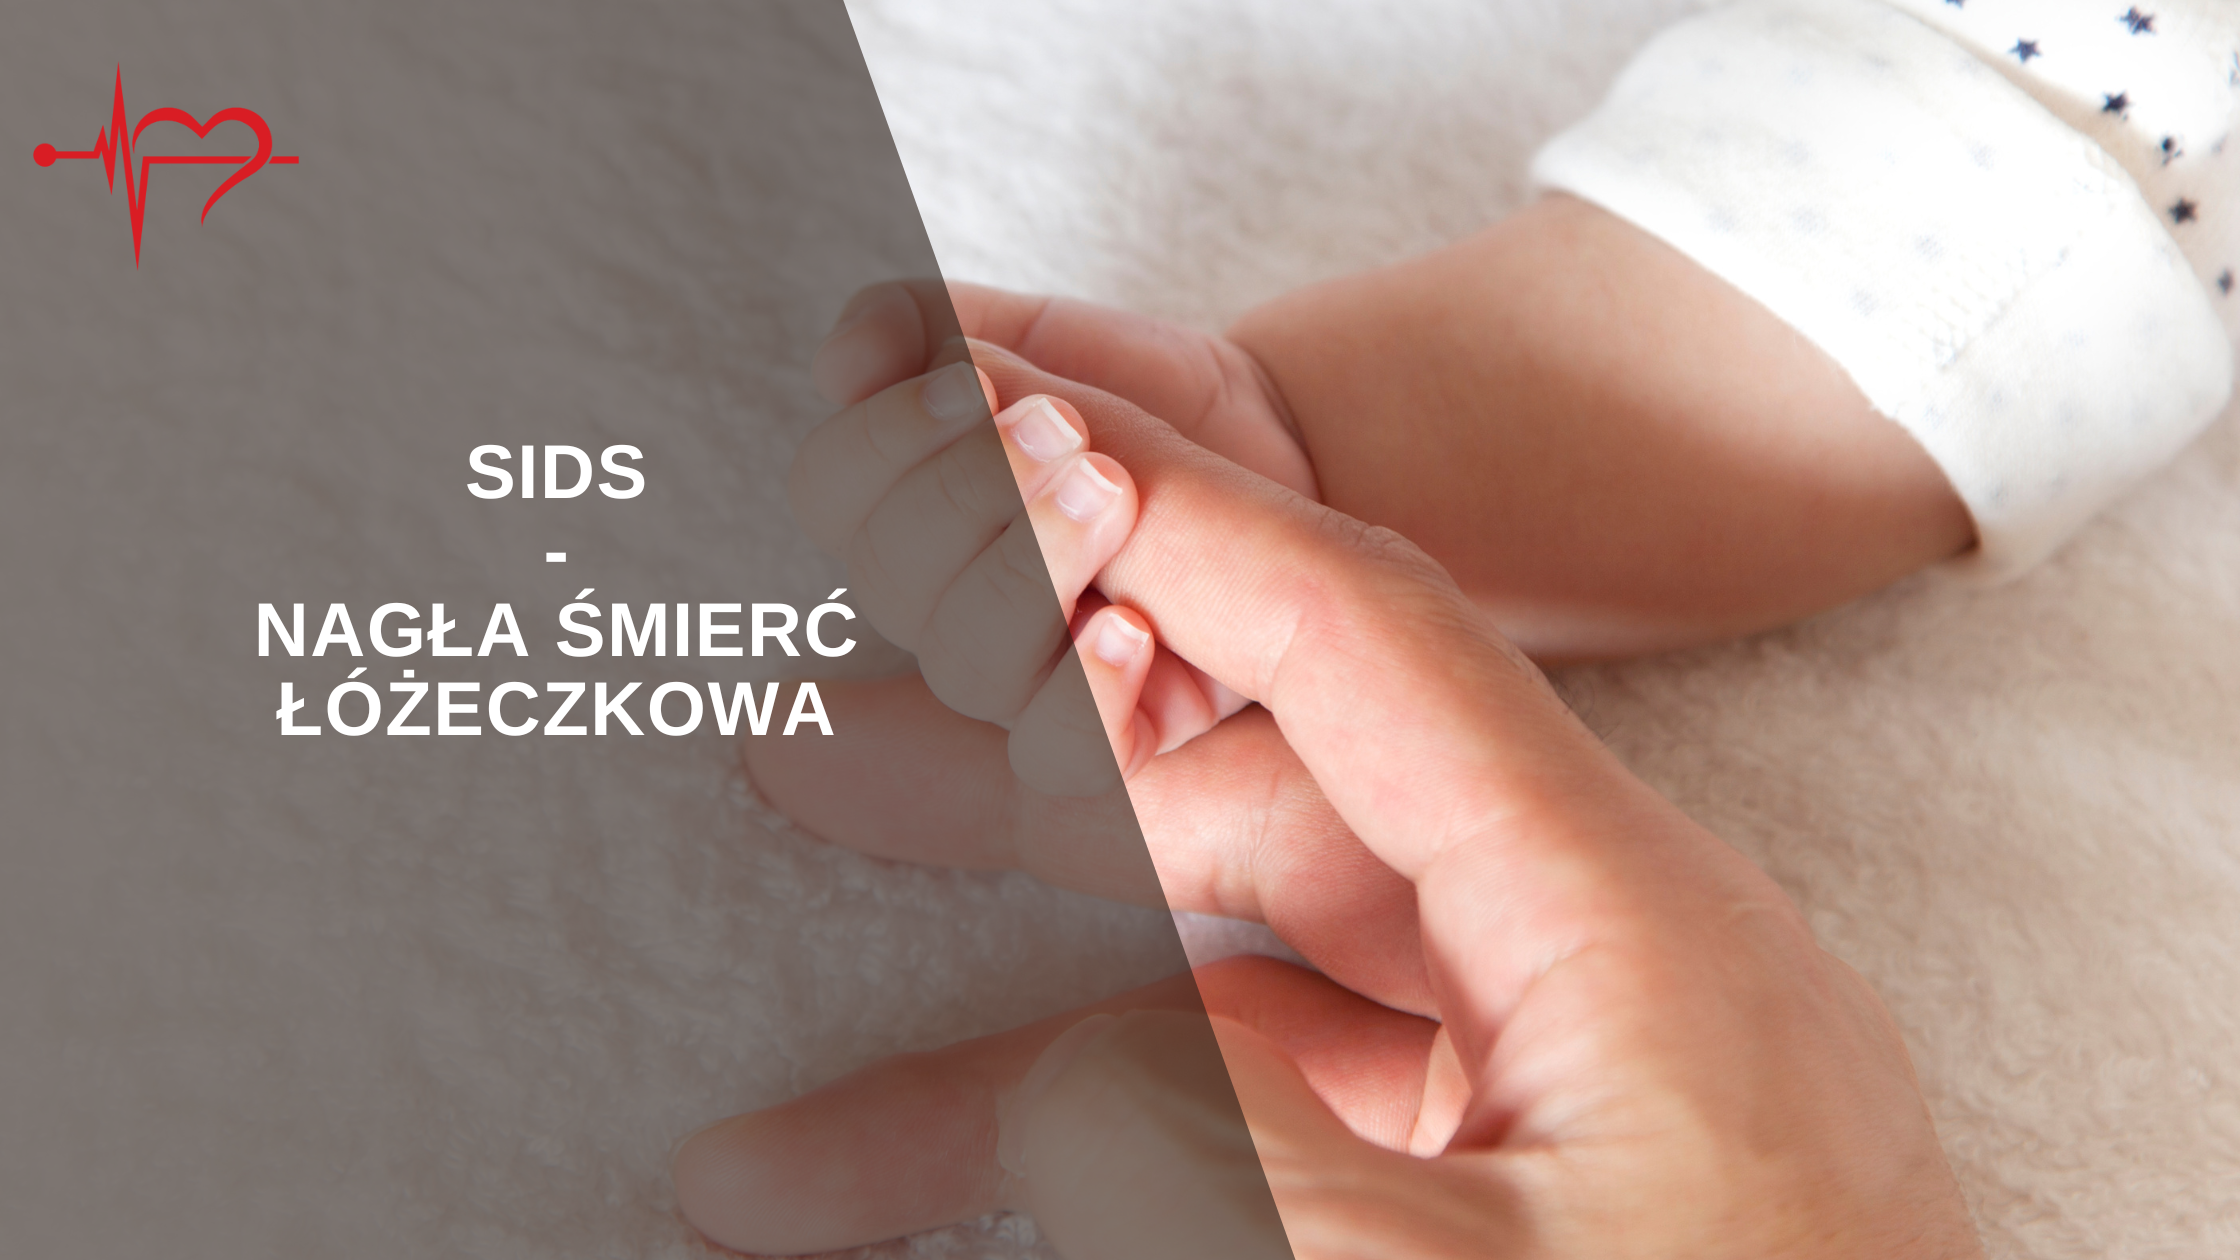 You are currently viewing SIDS- Nagła Śmierć Łóżeczkowa